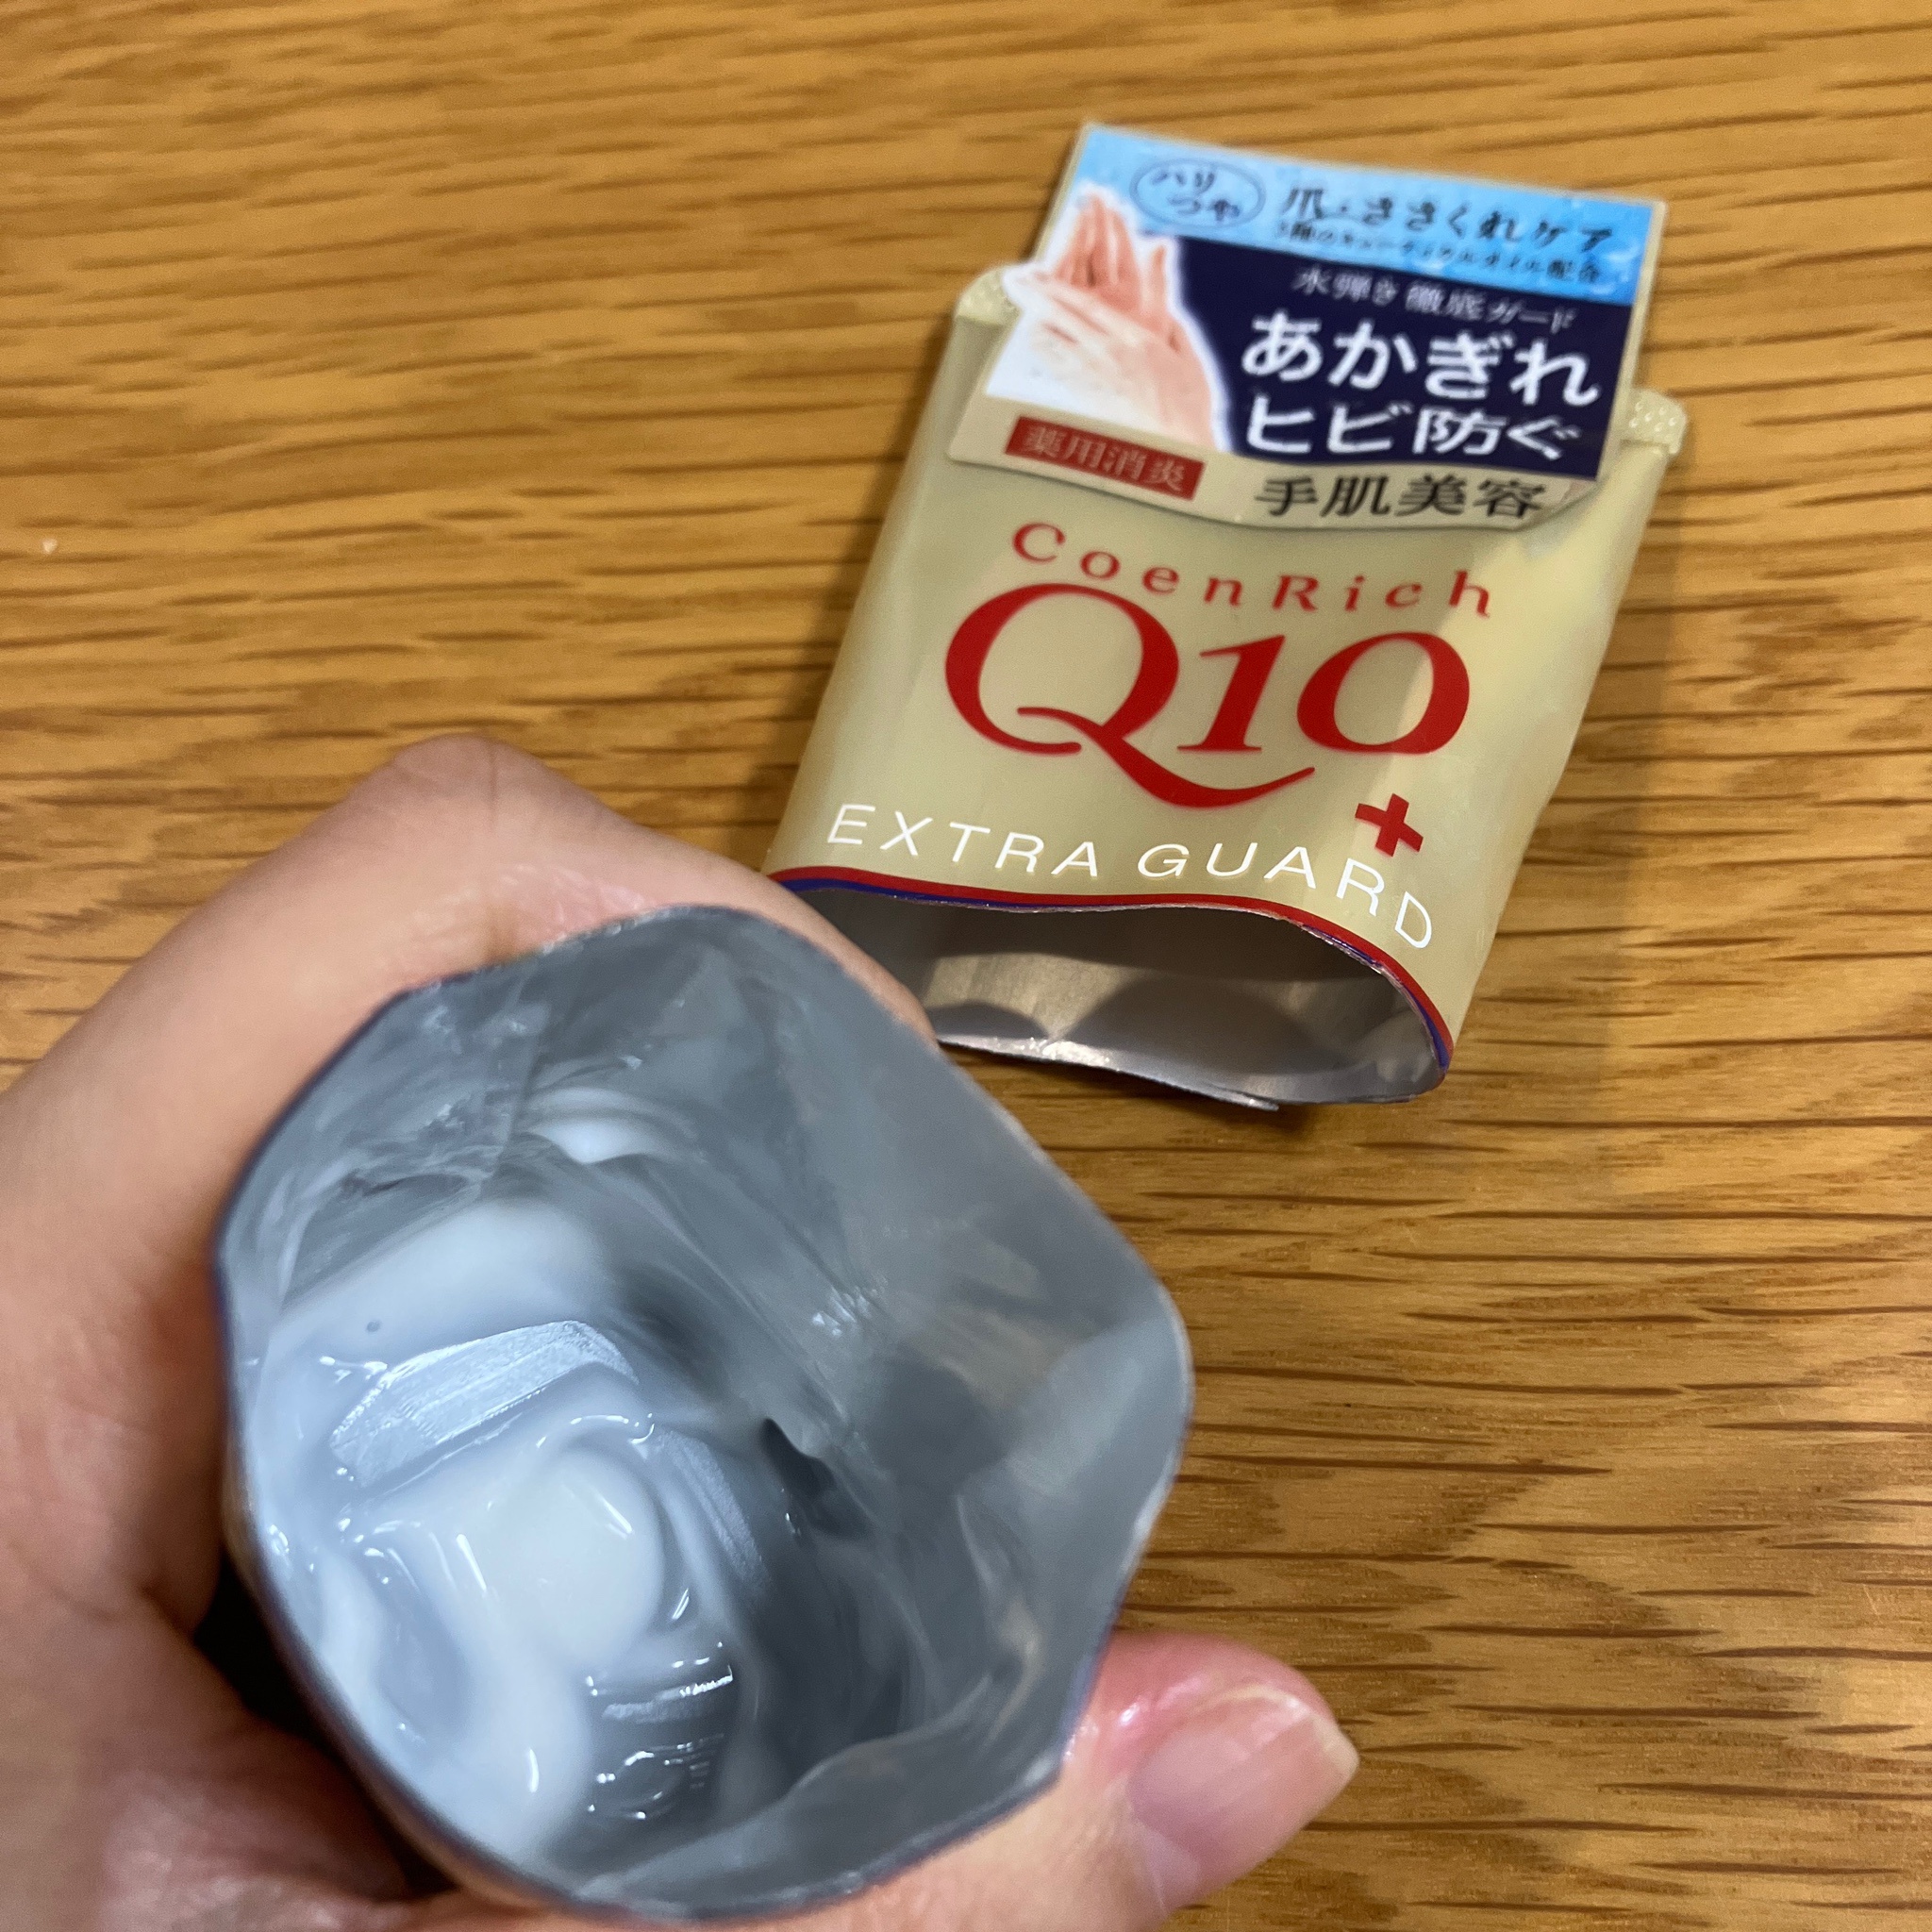 コエンリッチQ10 / 薬用エクストラガード ハンドクリームの公式商品